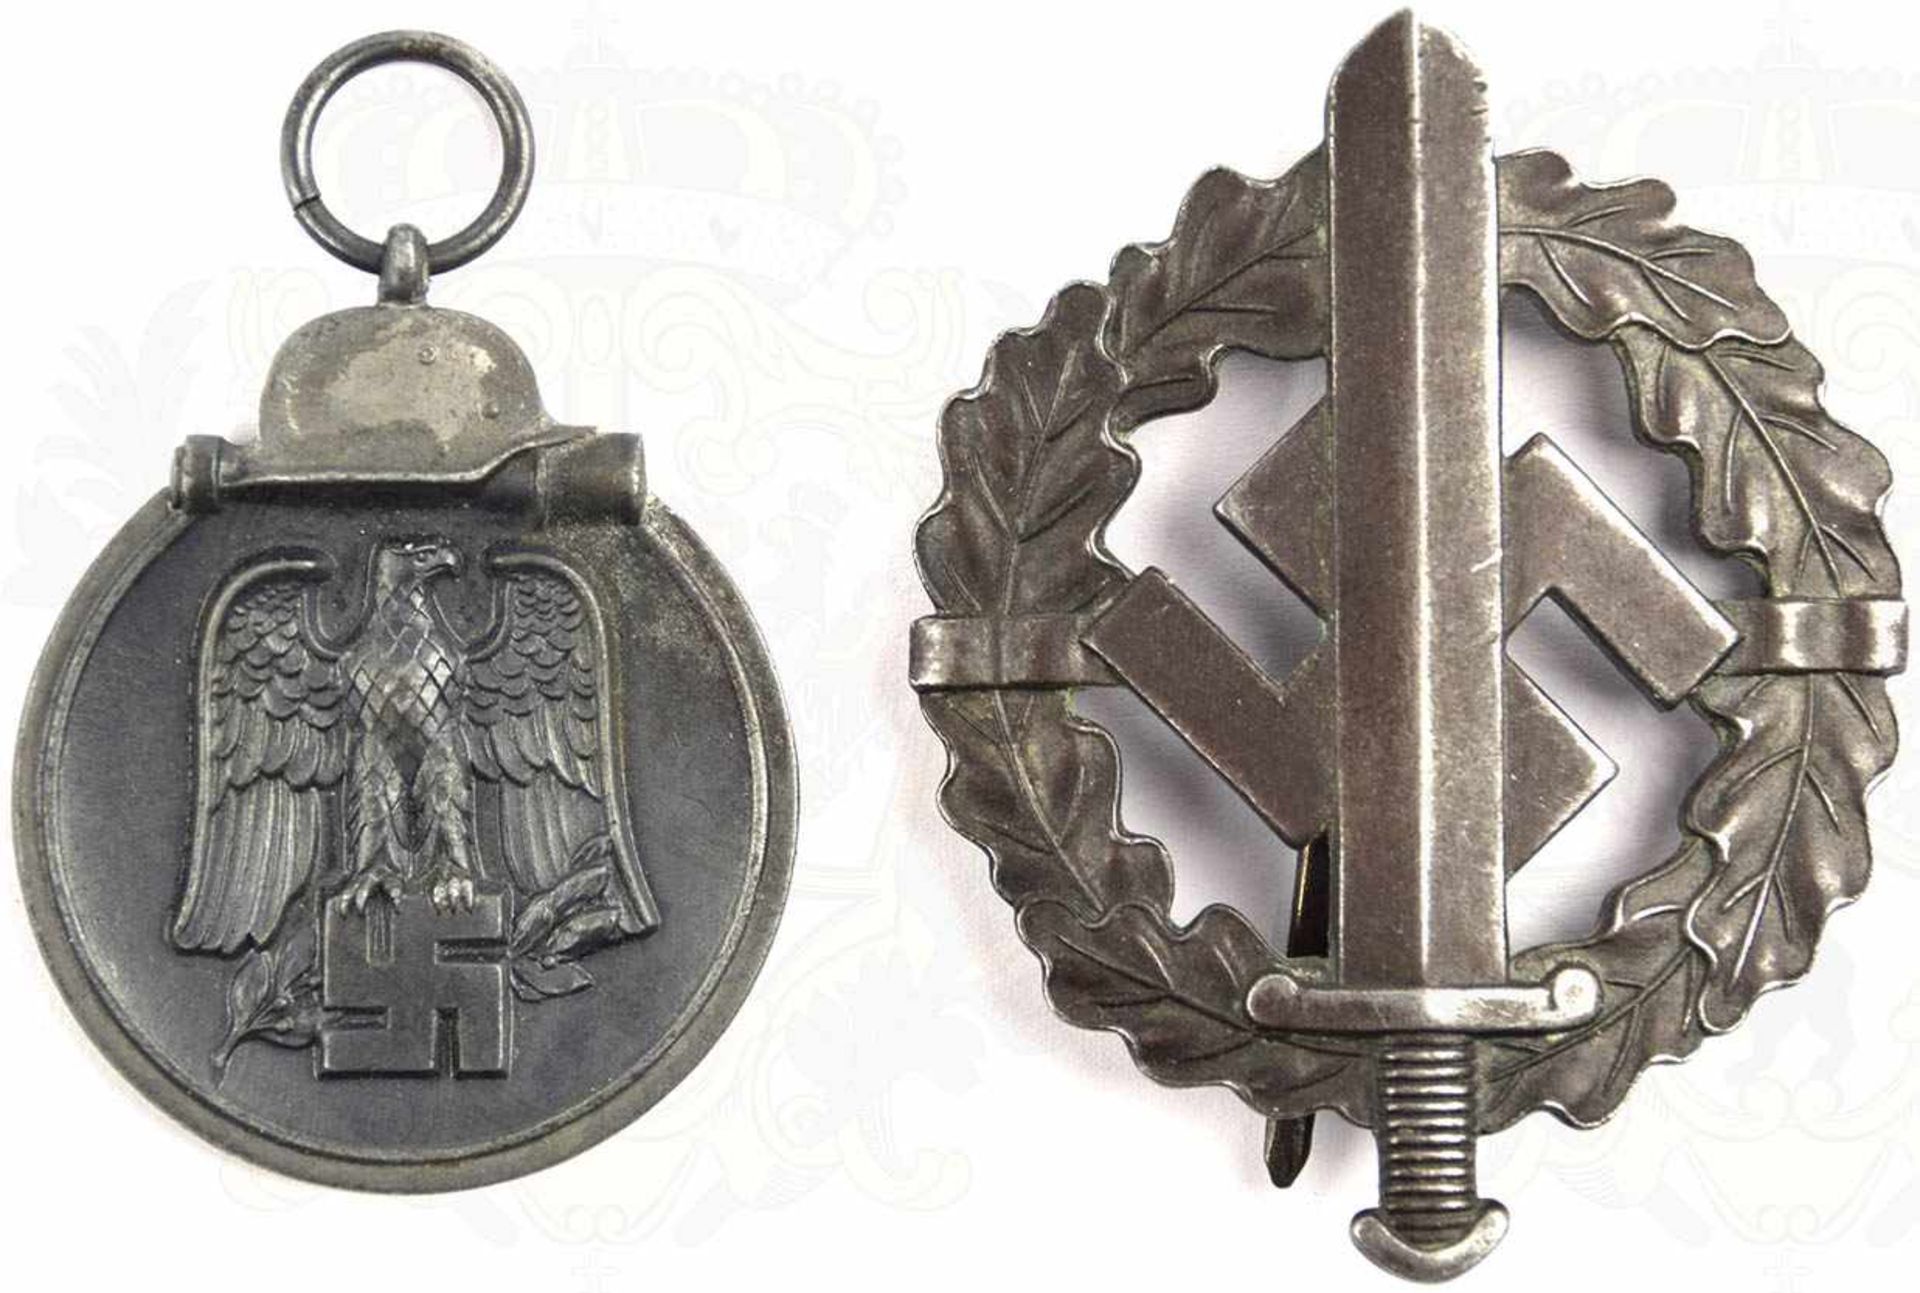 EHRENZEICHENGRUPPE EINES SOLDATEN, Medaille Winterschlacht im Osten 1941/42, Feinzink/patiniert, - Bild 2 aus 3